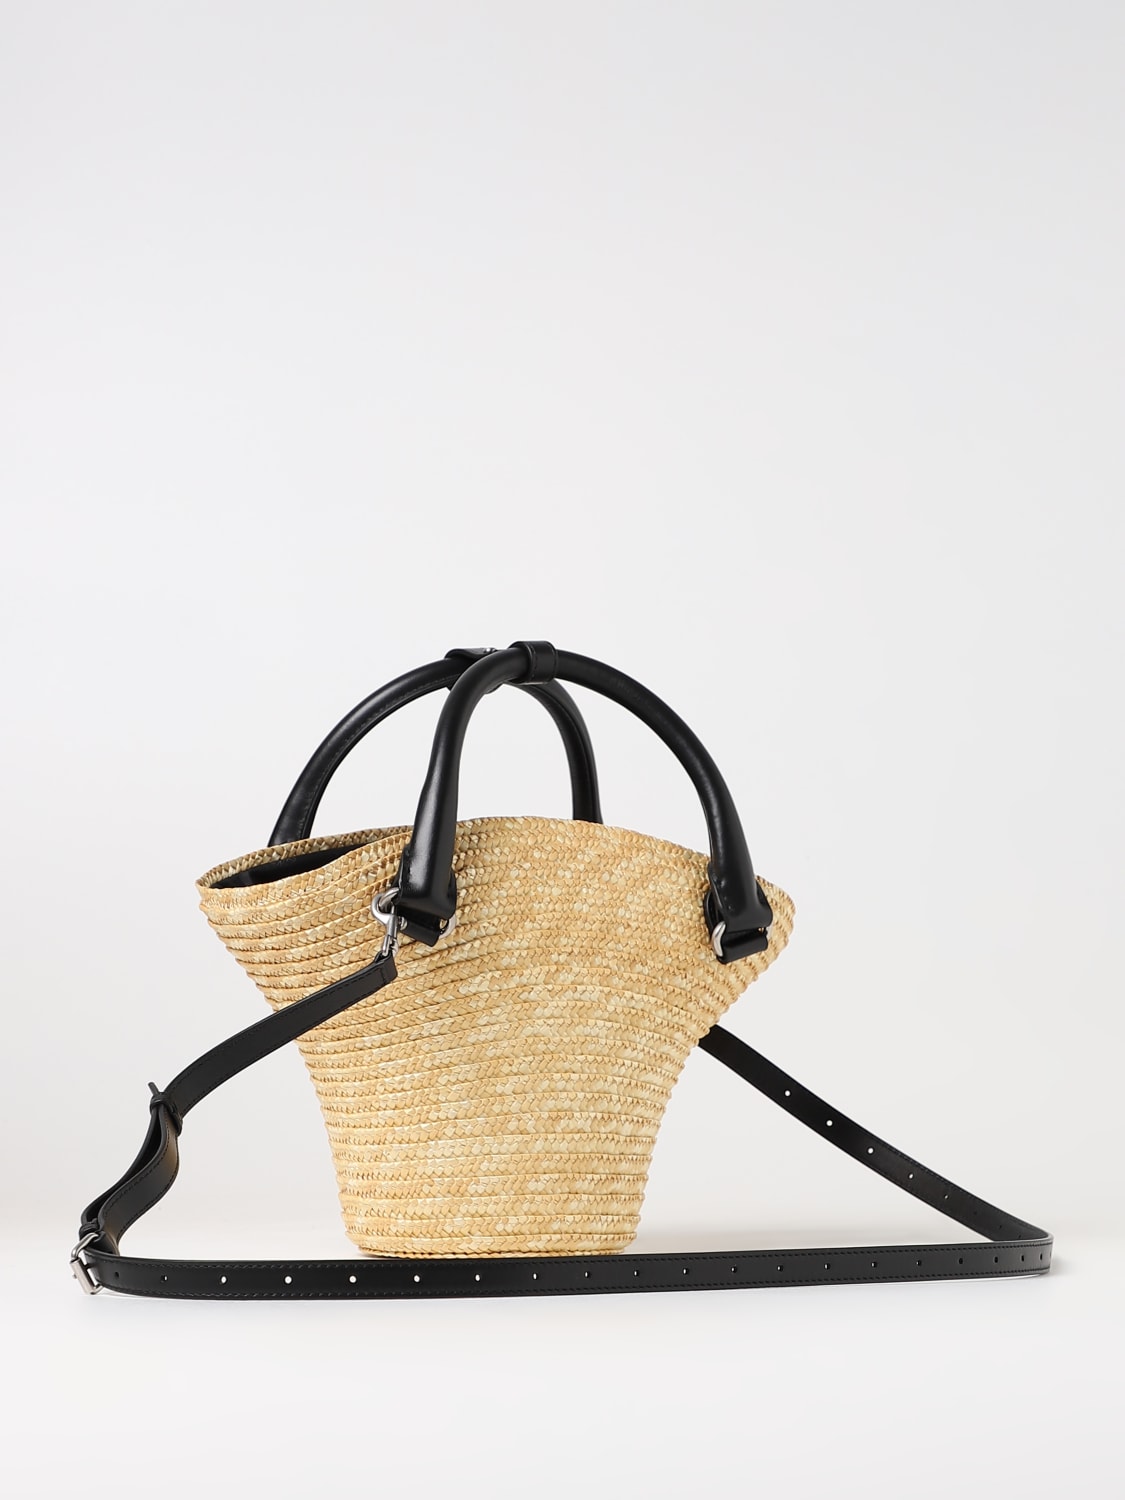 BALENCIAGA: Mini Tote Beach Bag in woven raffia - Natural | Balenciaga mini bag online at